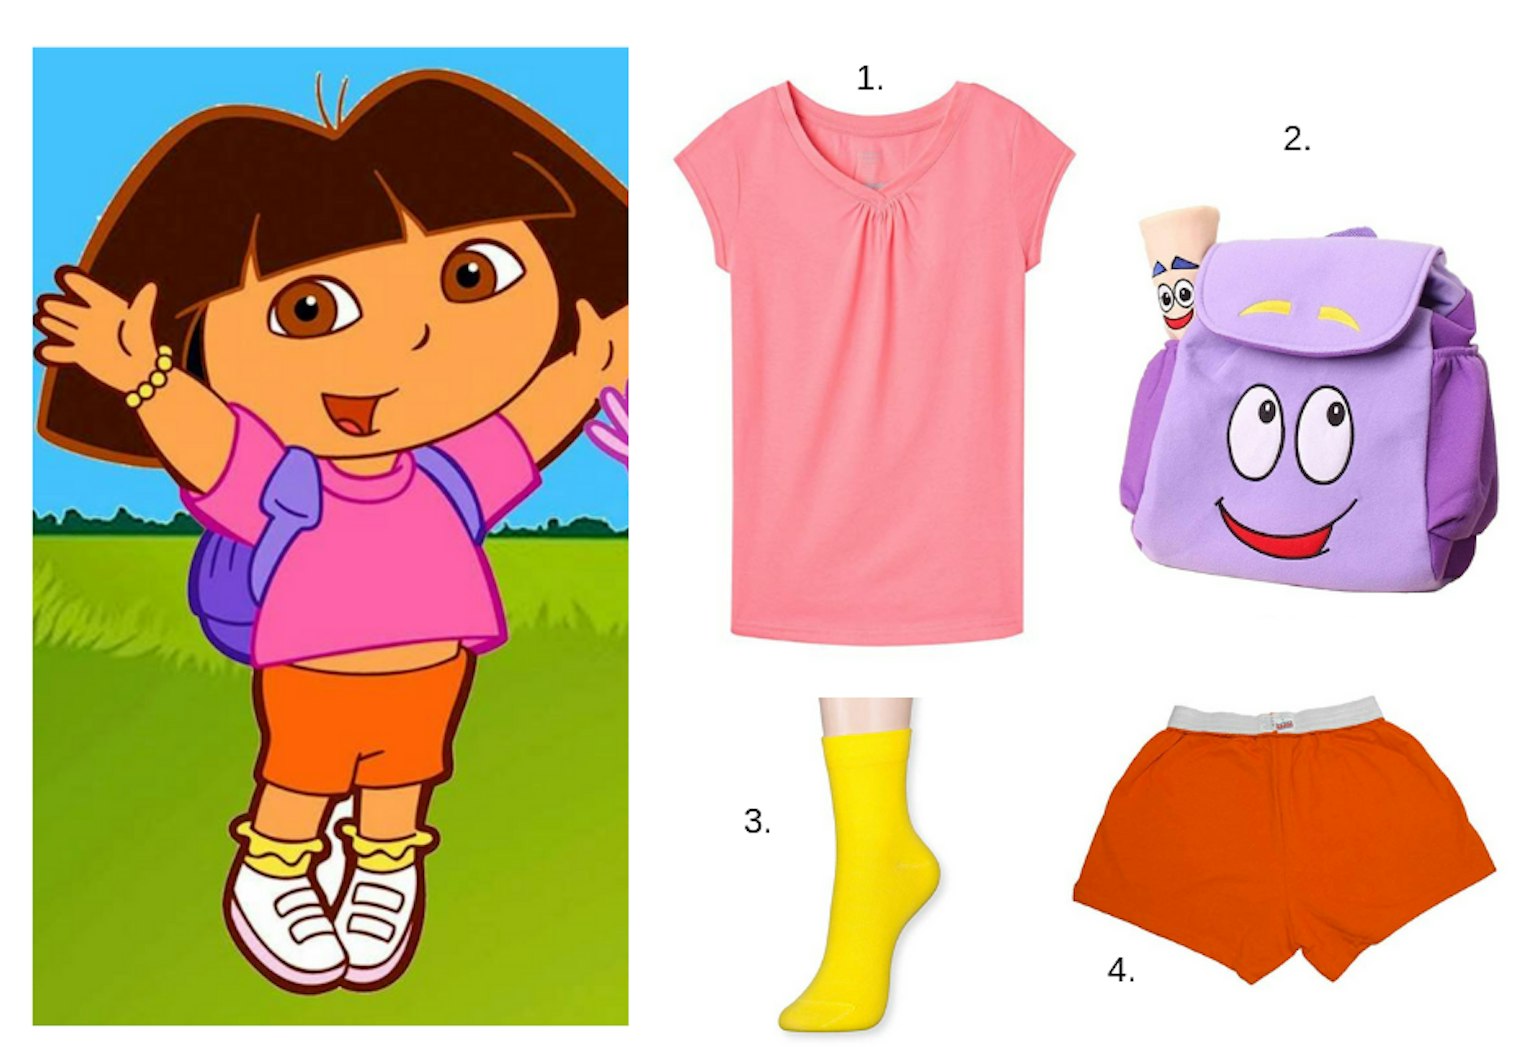 DIY Dora The Explorer Costume For Girls E1567710091233 ?auto=compress%2Cformat&fit=scale&h=1047&ixlib=php 3.3.1&q=80&w=1536&wpsize=1536x1536&s=ae36250a5a539dcccf05f583fddc0170